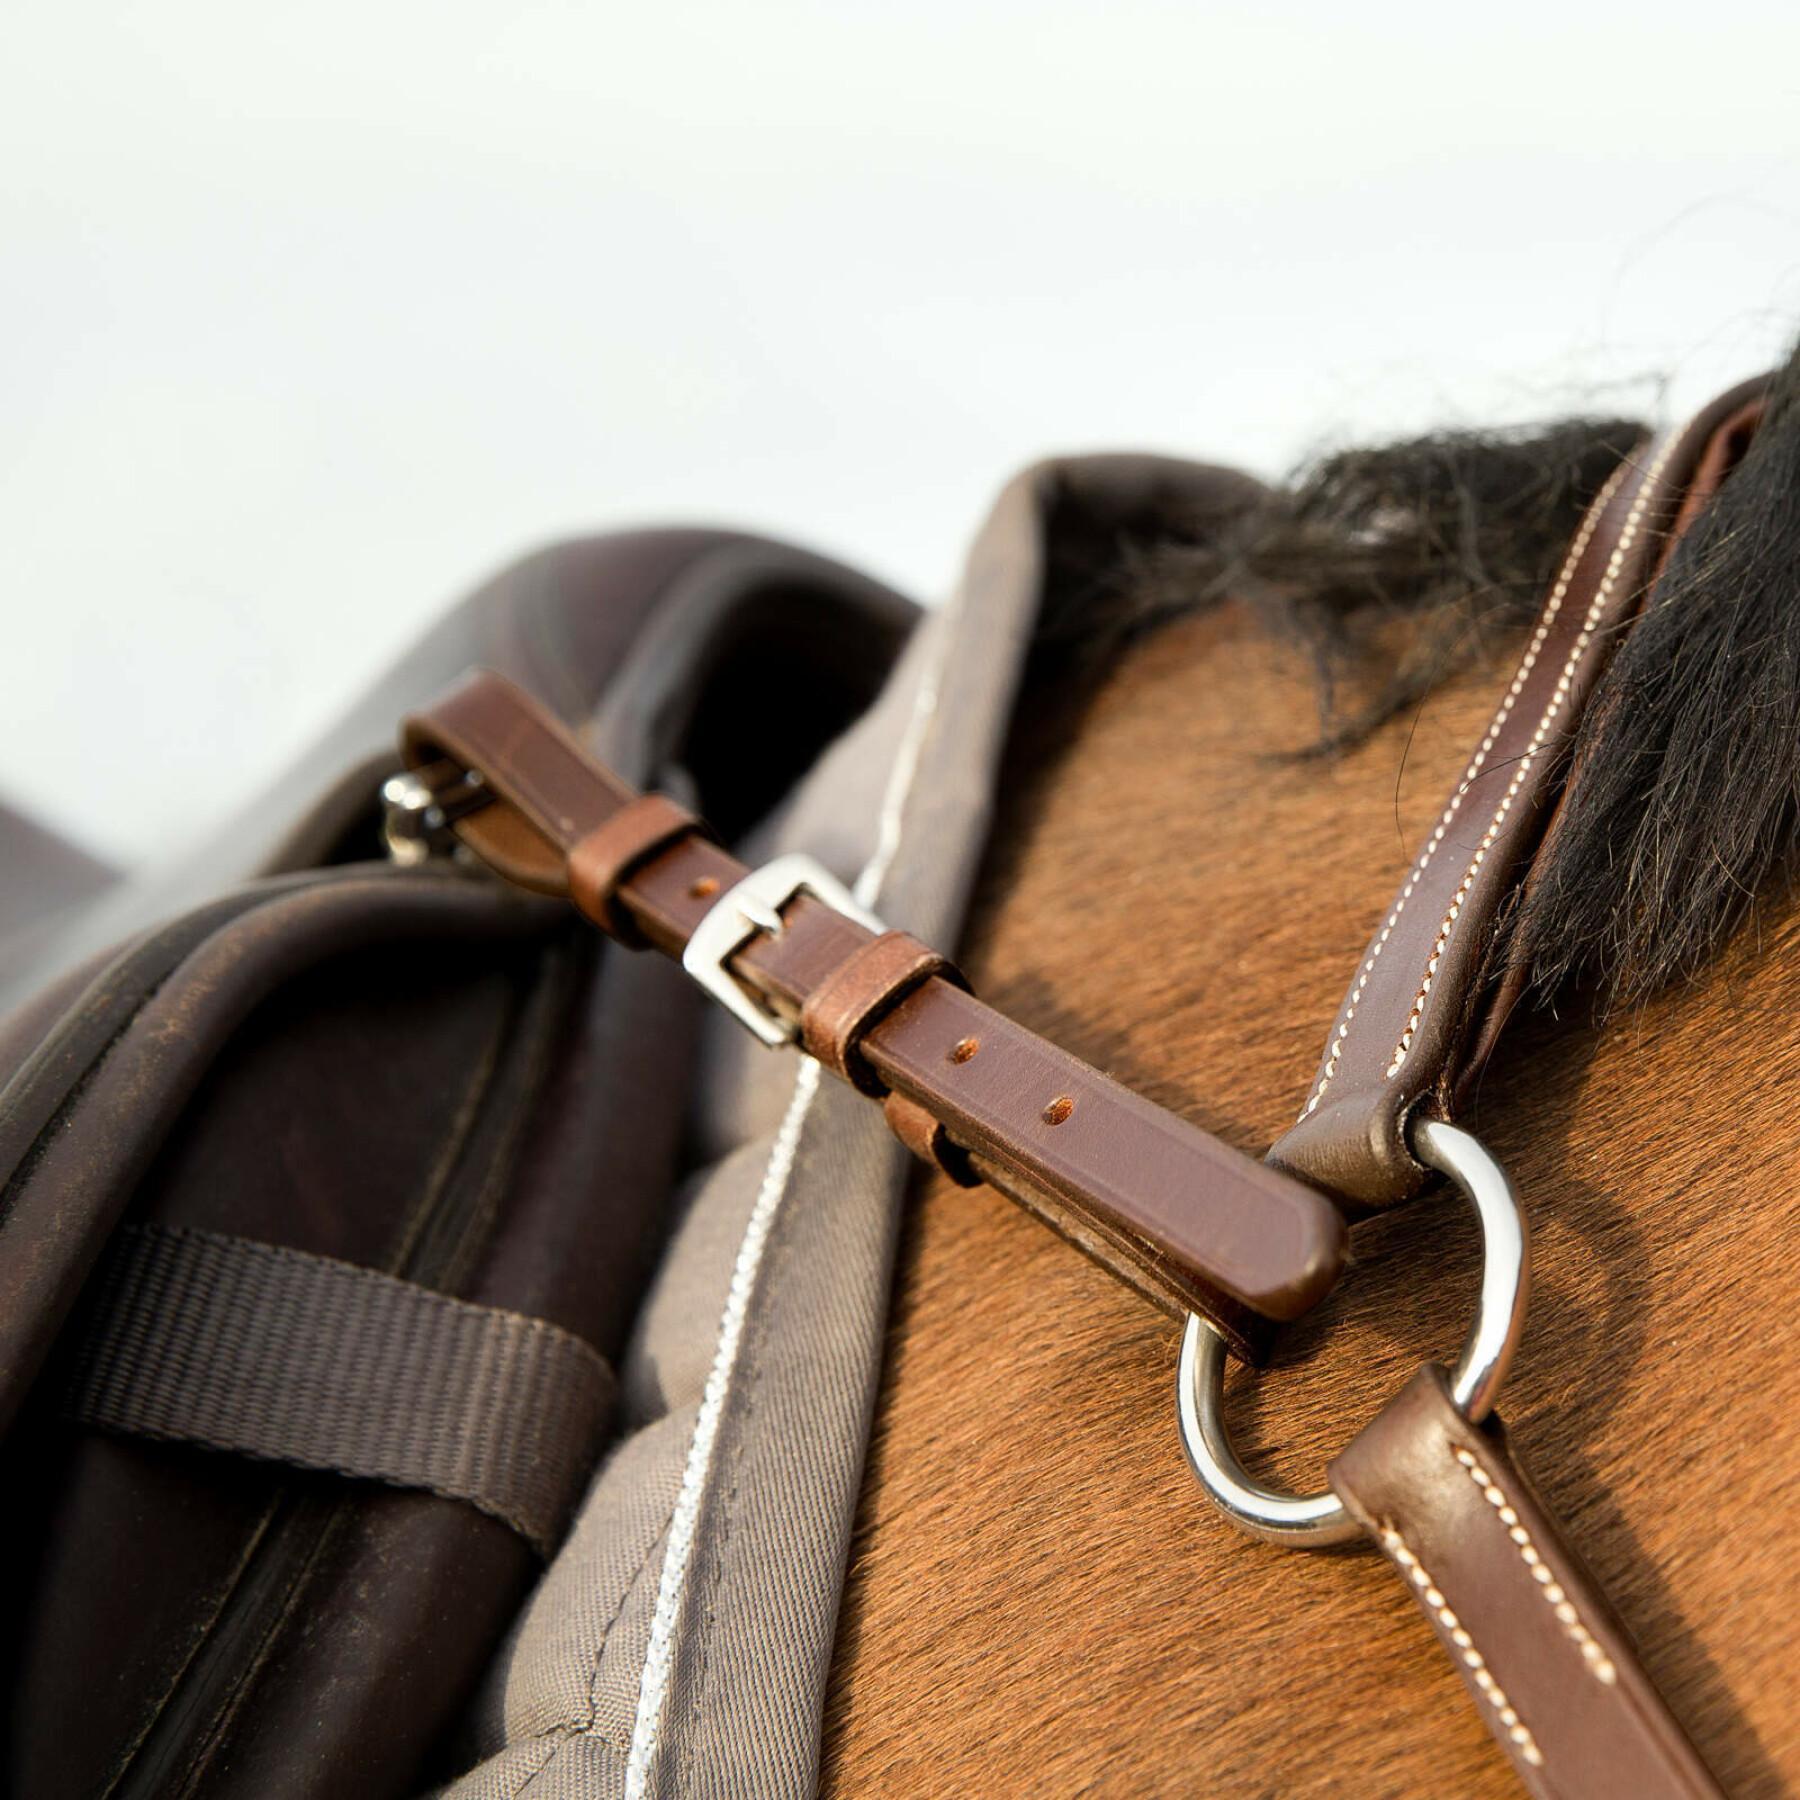 Verstelbare jachthalsband voor paarden Horze